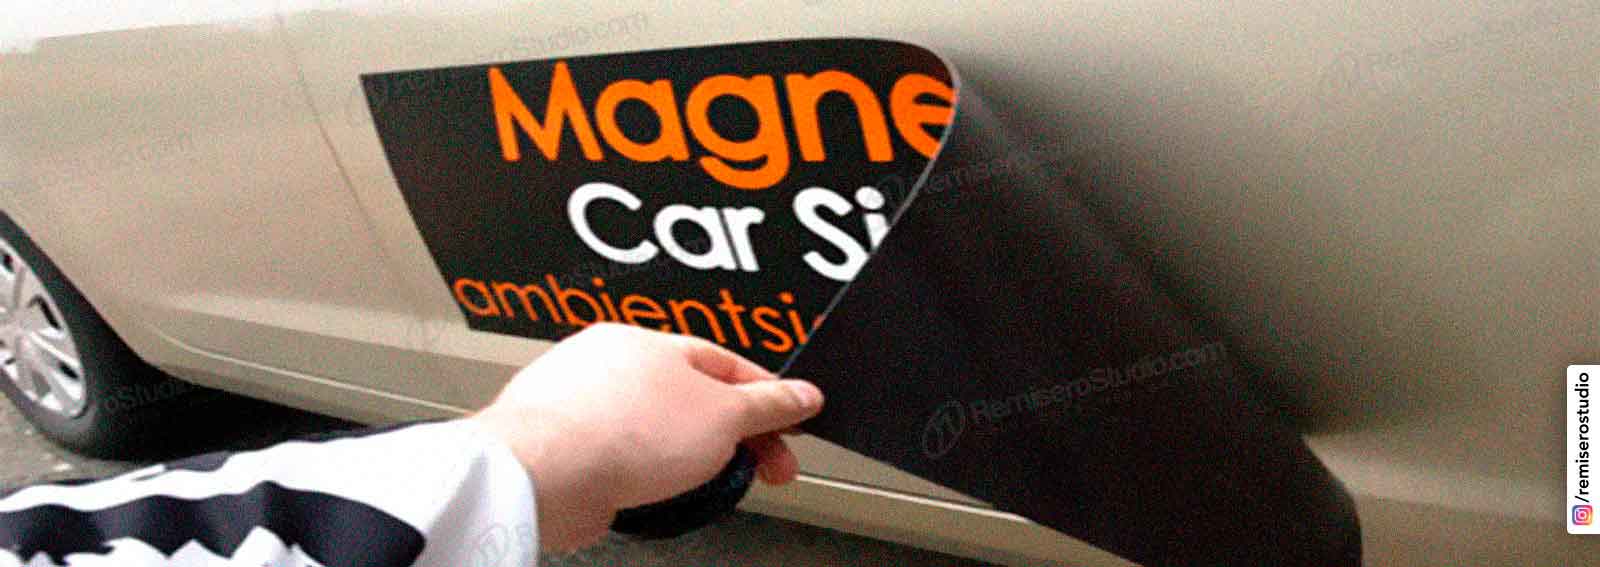 Láminas magnéticas e imanes para coches